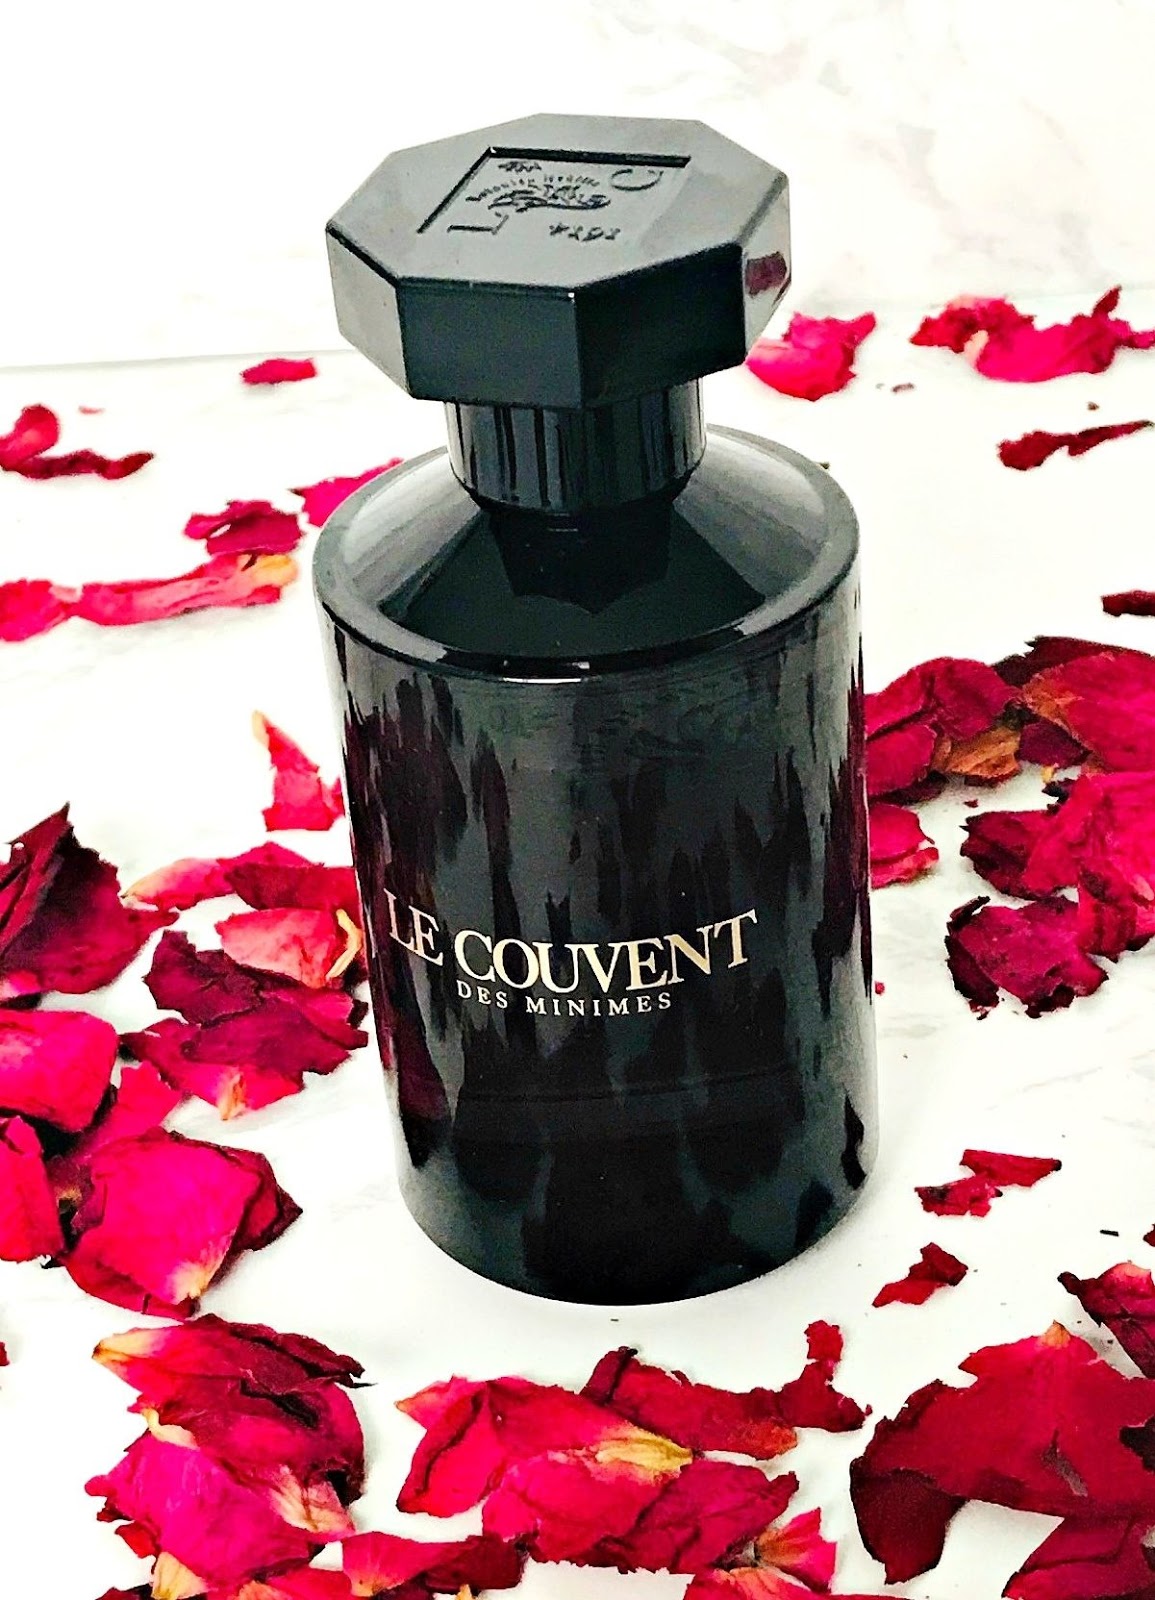 Le Couvent des Minimes' Tinharé Parfum Review